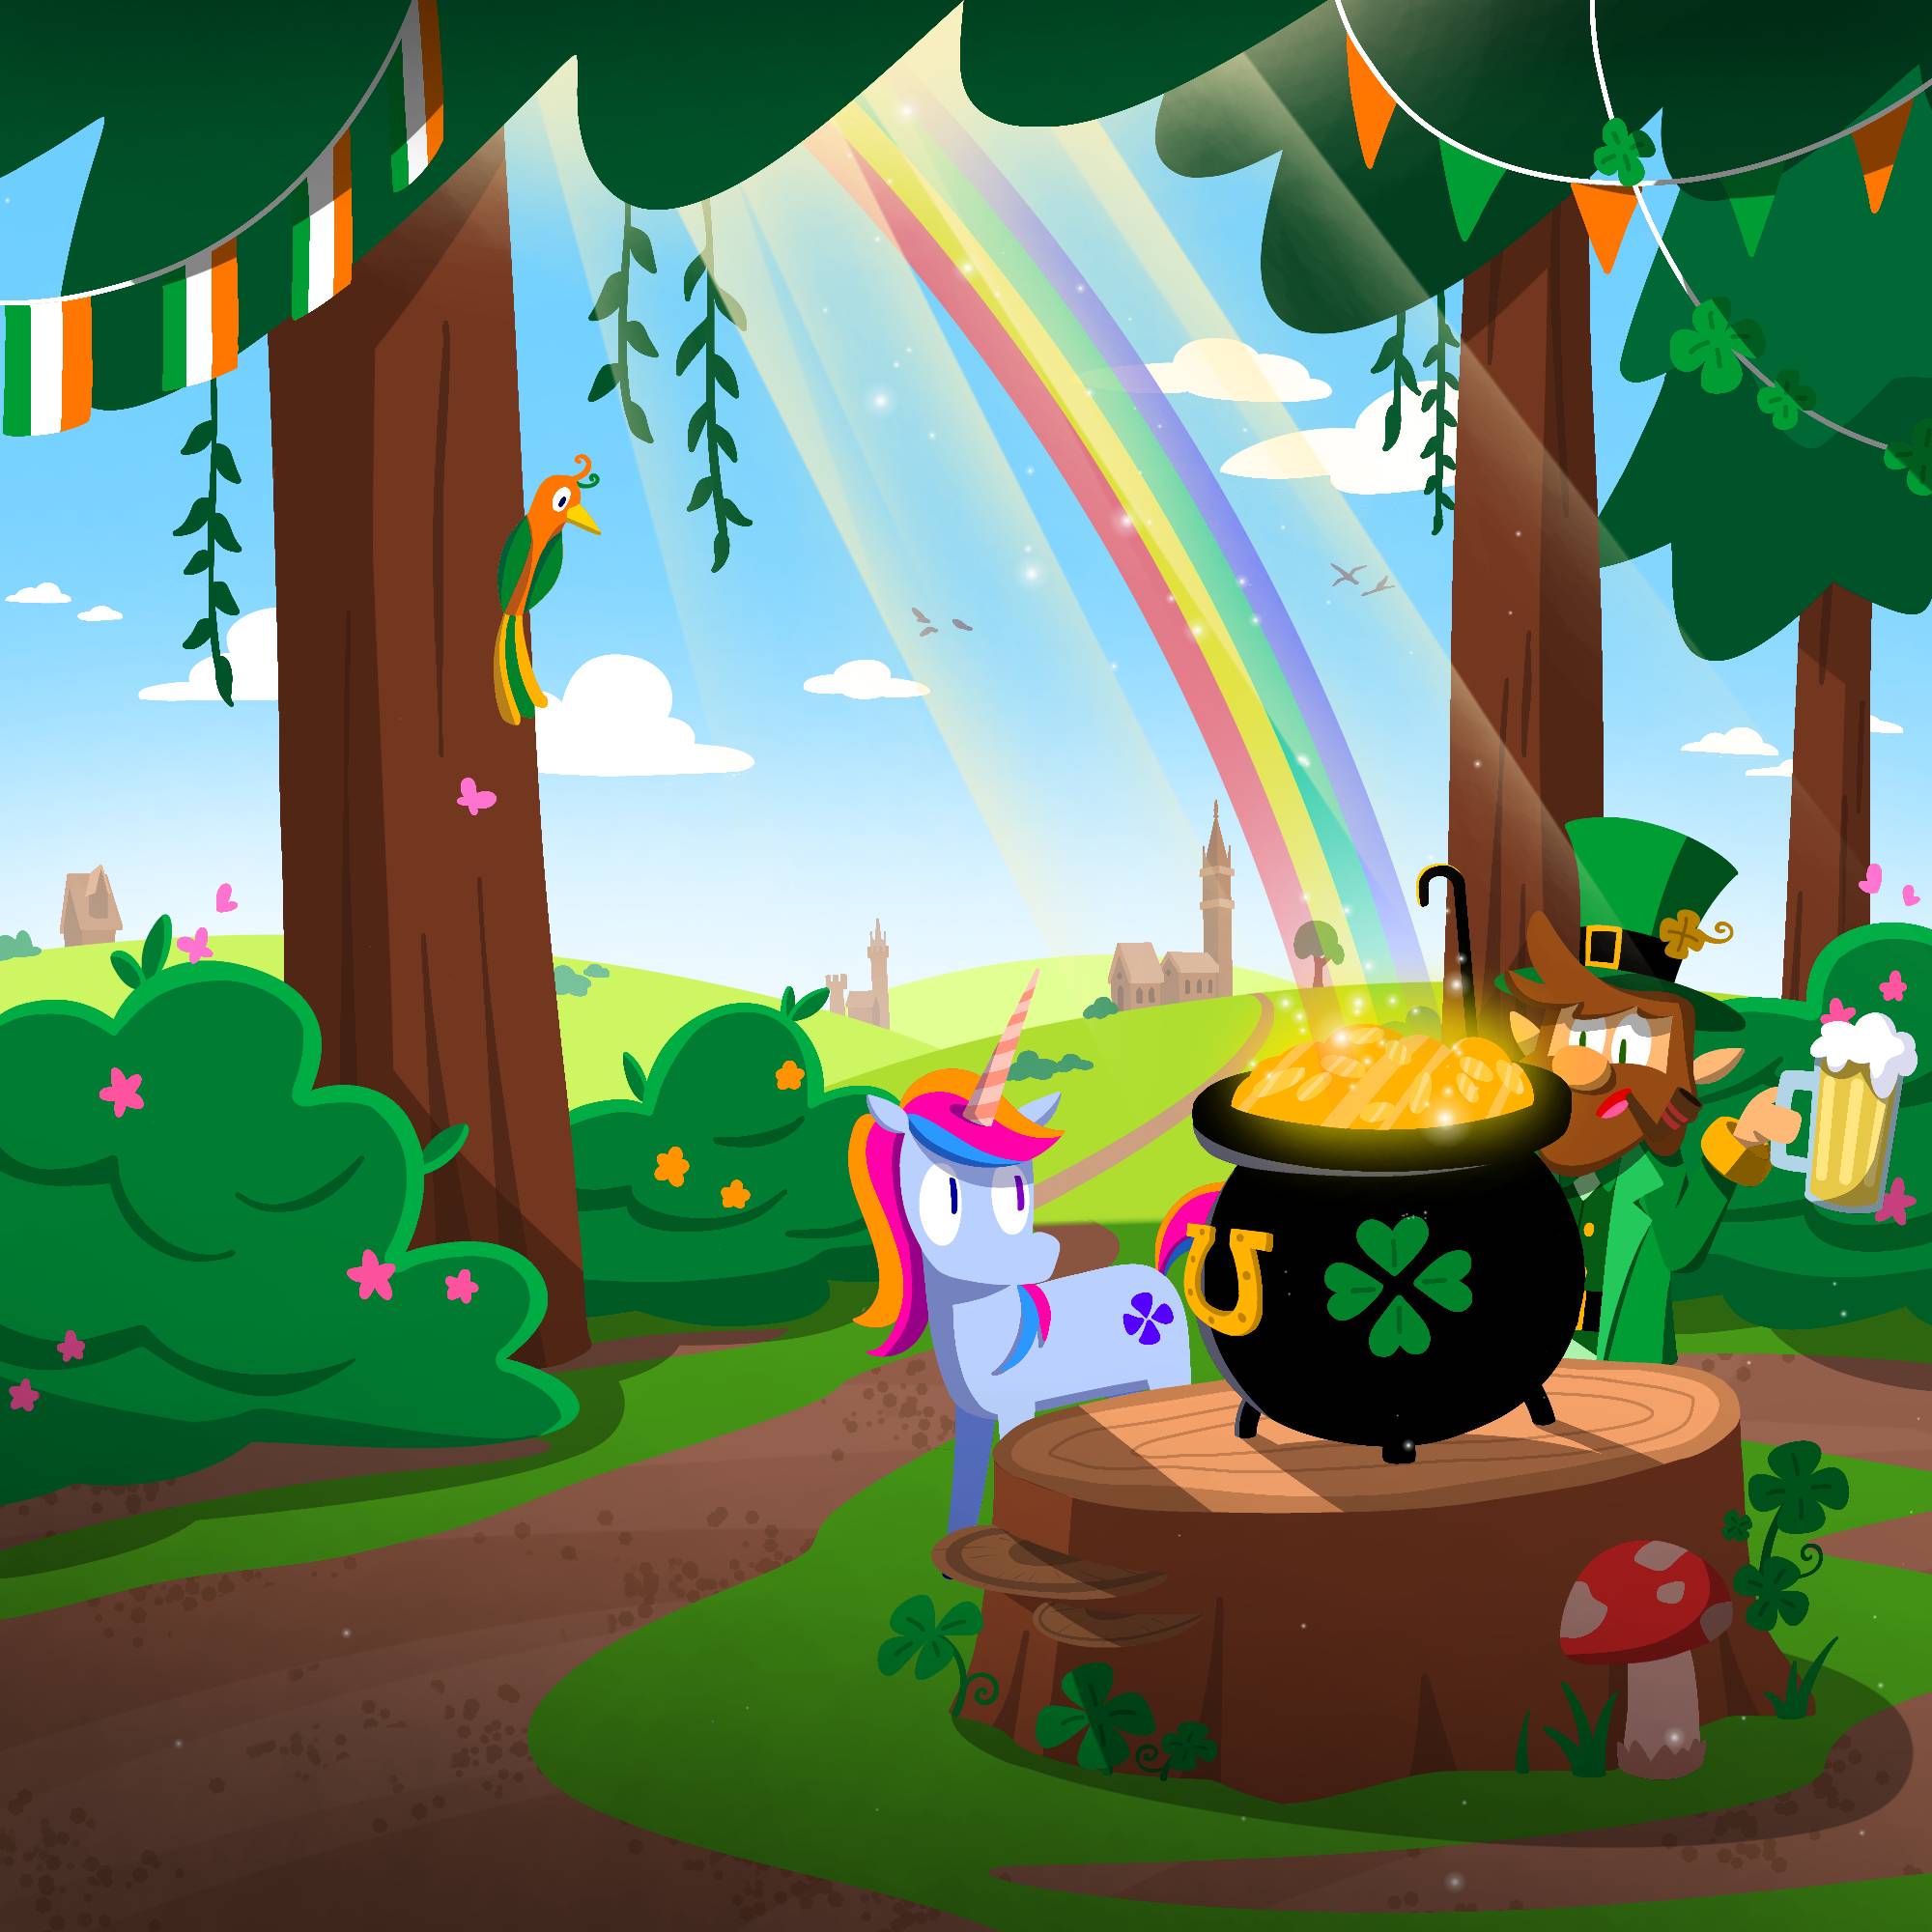 Rainbow Friends in the Park by Sjakr on DeviantArt